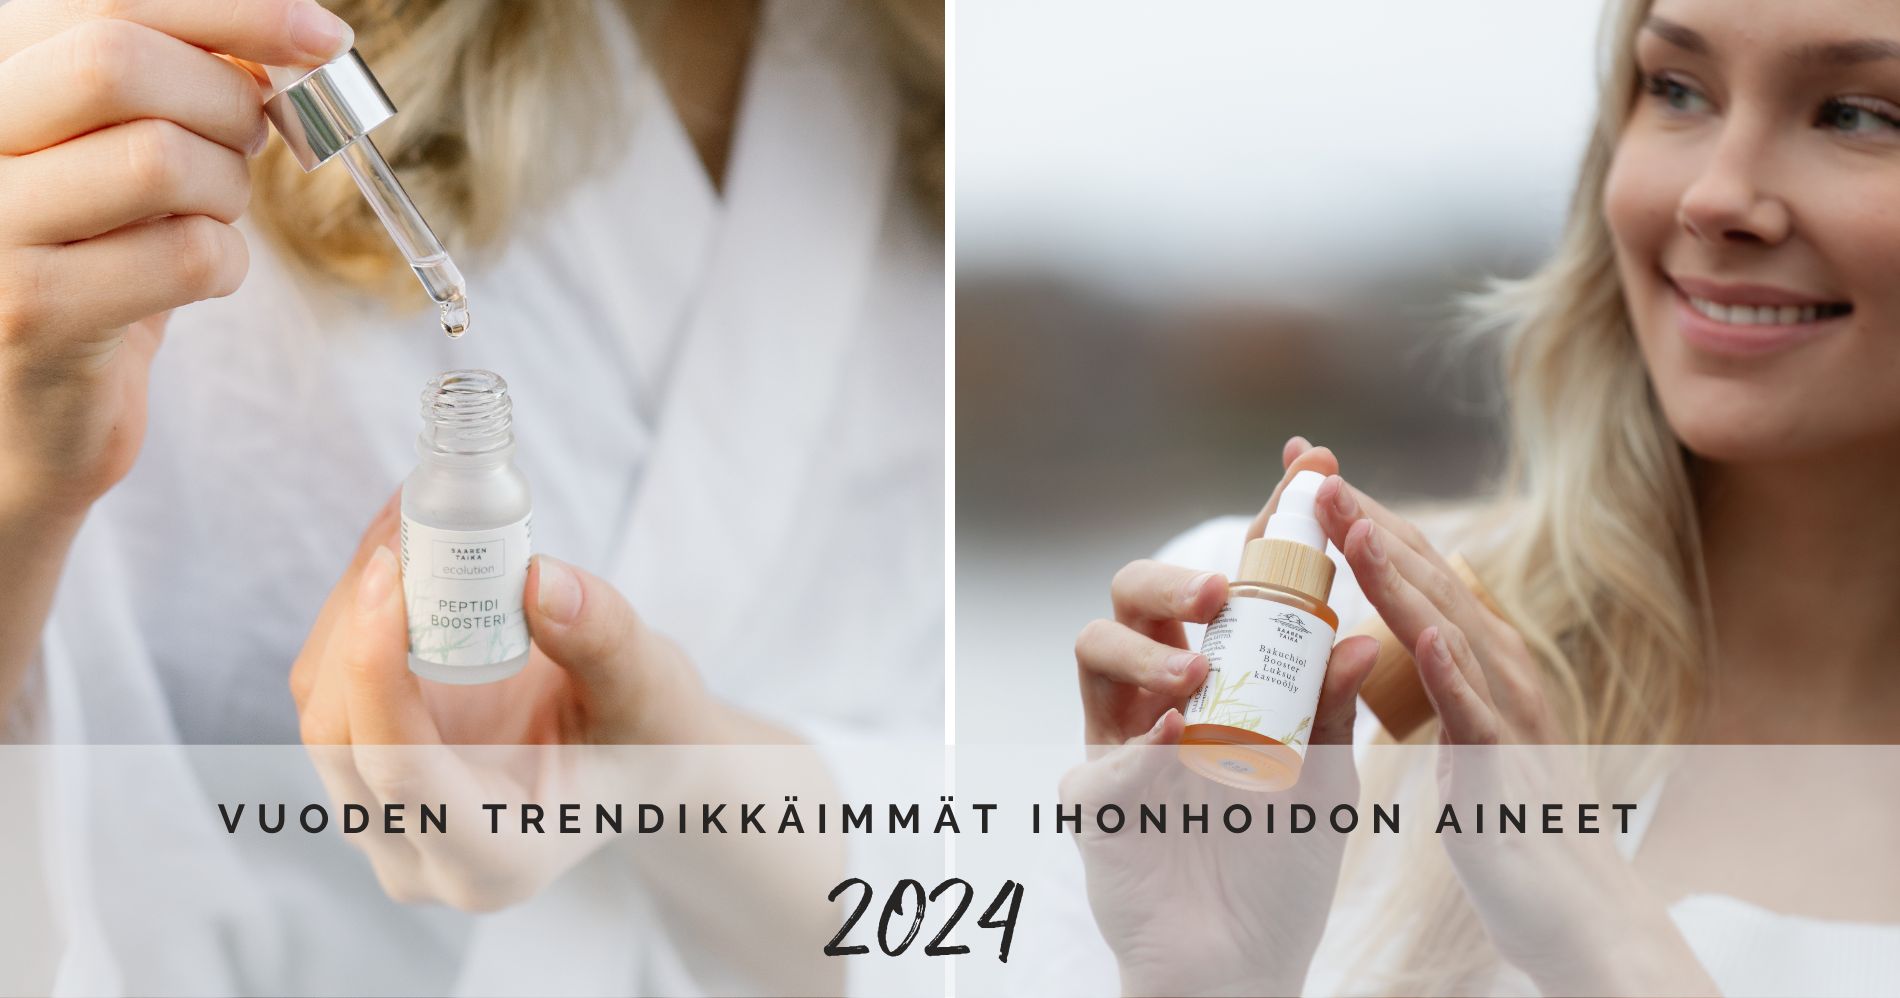 Vuoden 2024 trendikkäimmät ihonhoidon aineet